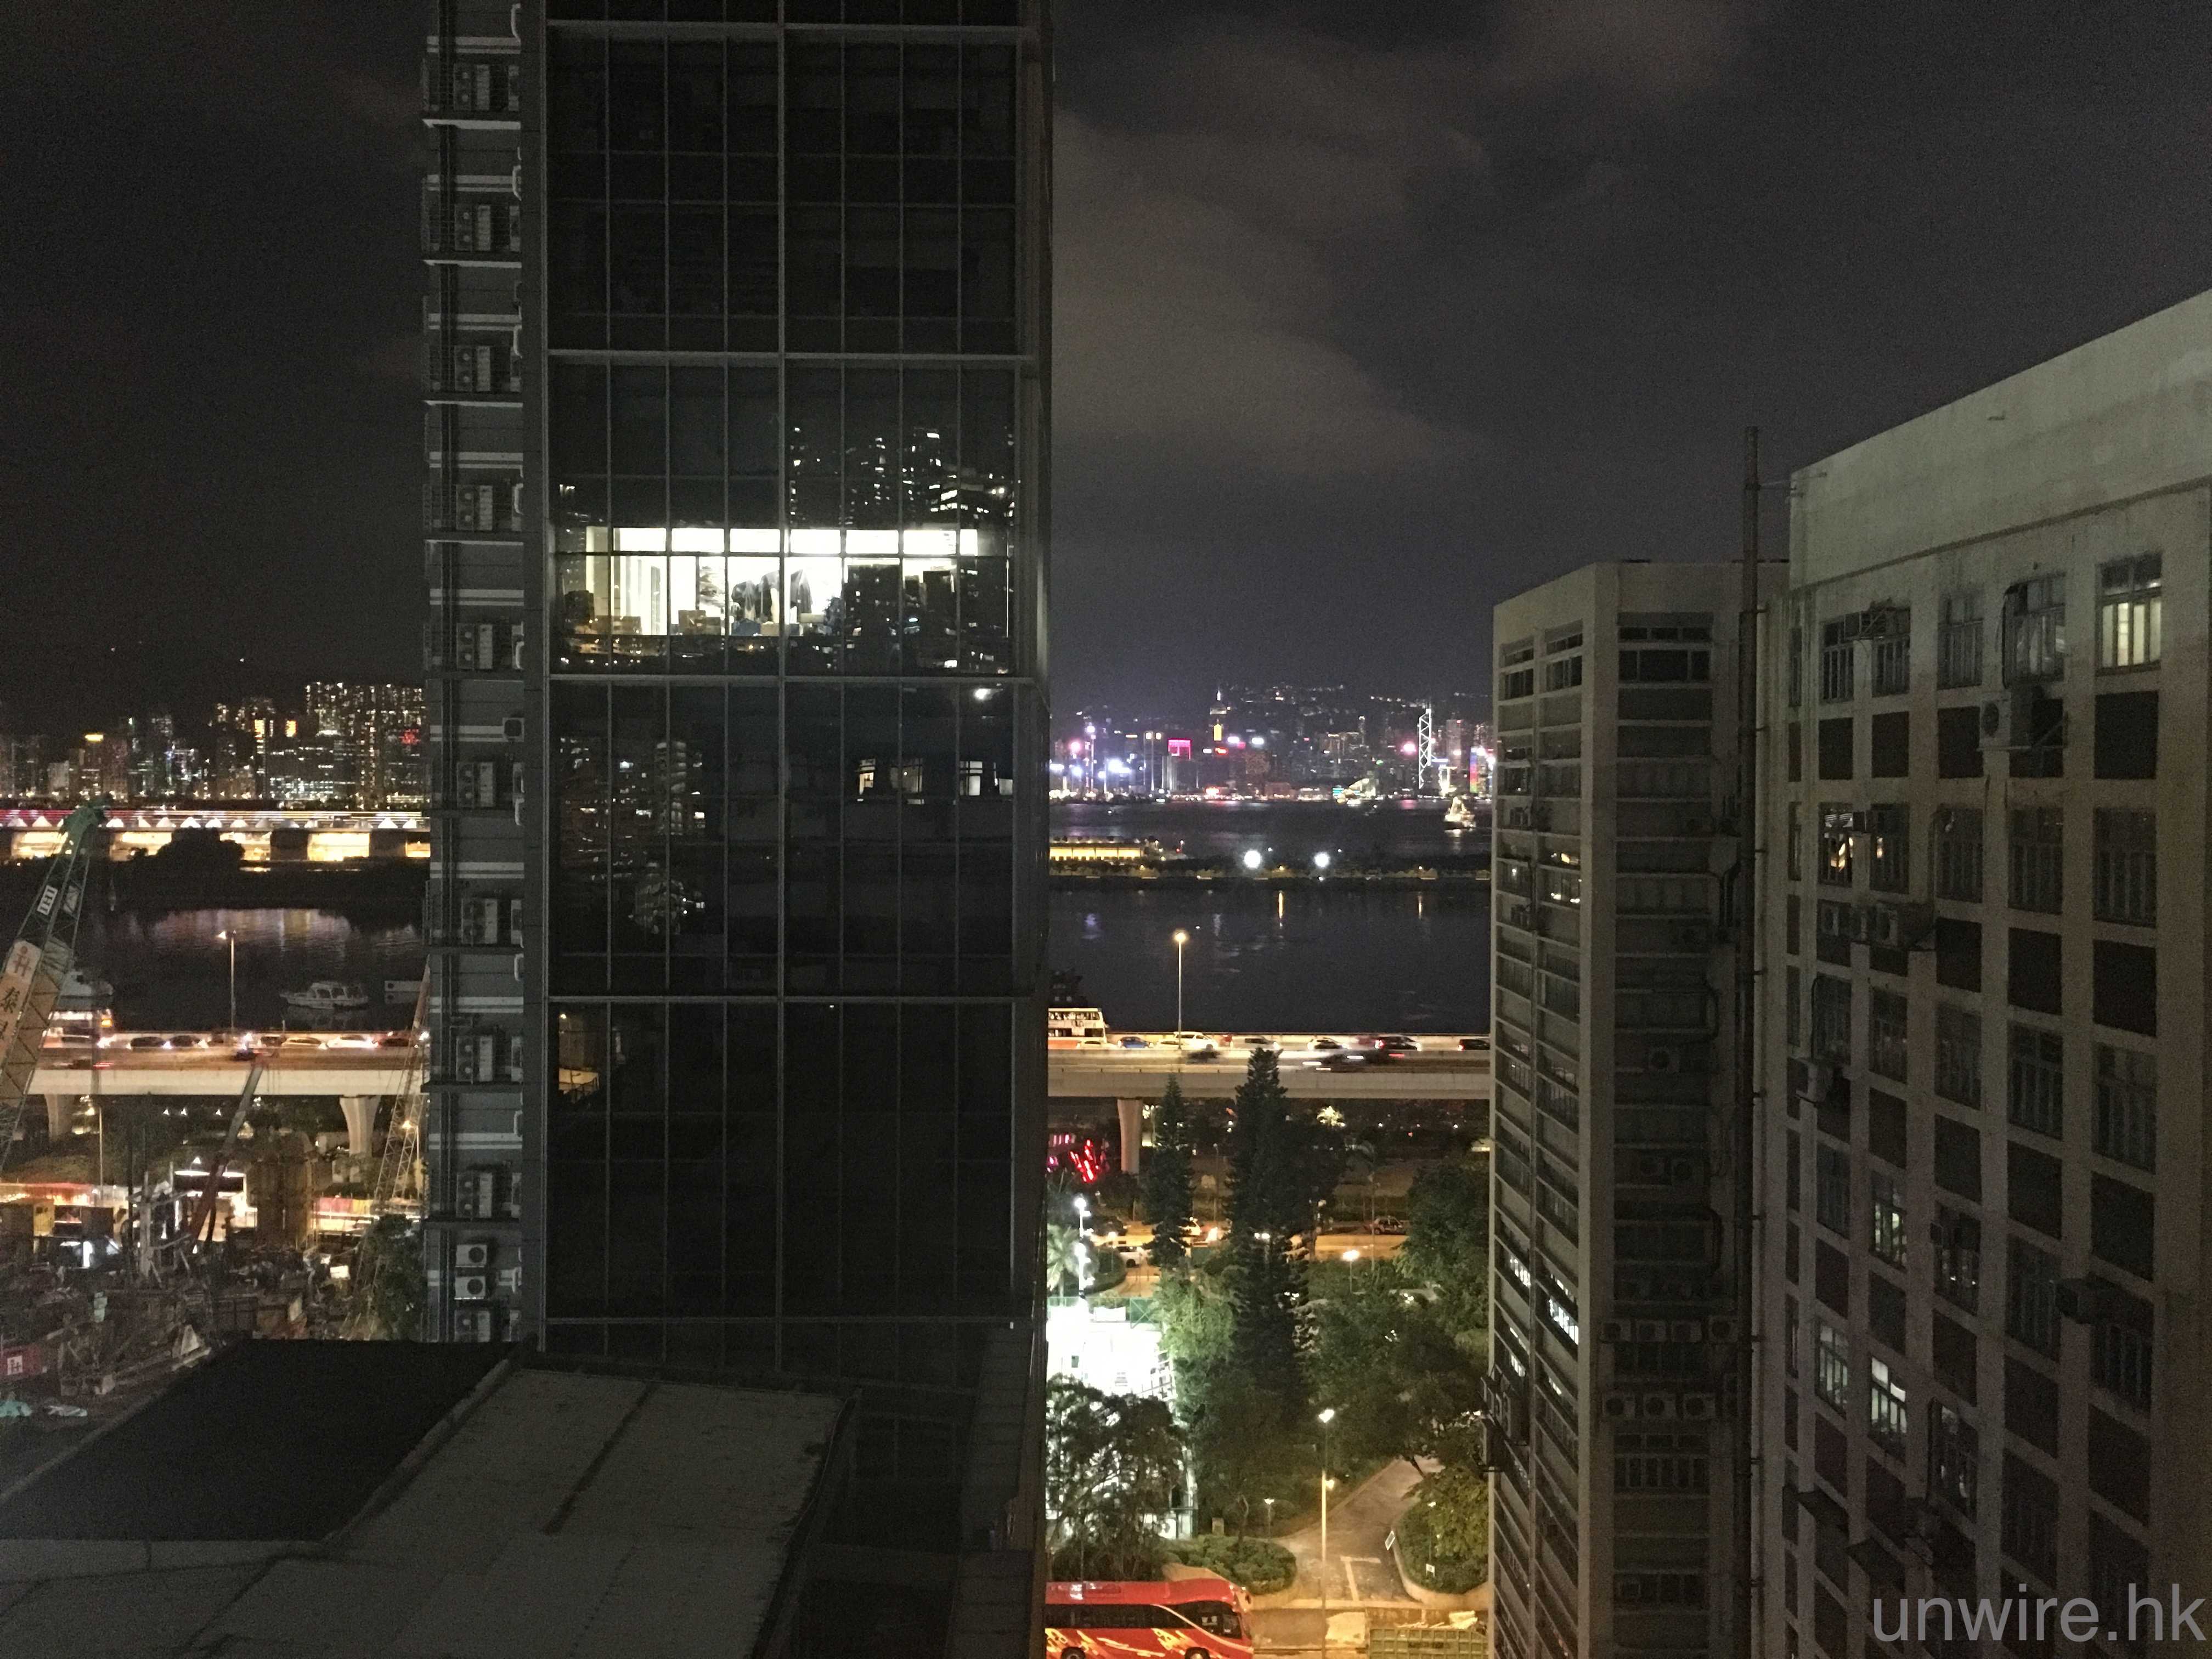 香港行貨 Iphone 7 7 Plus 鏡頭拍攝初步評測夜景雜訊更少 香港unwire Hk